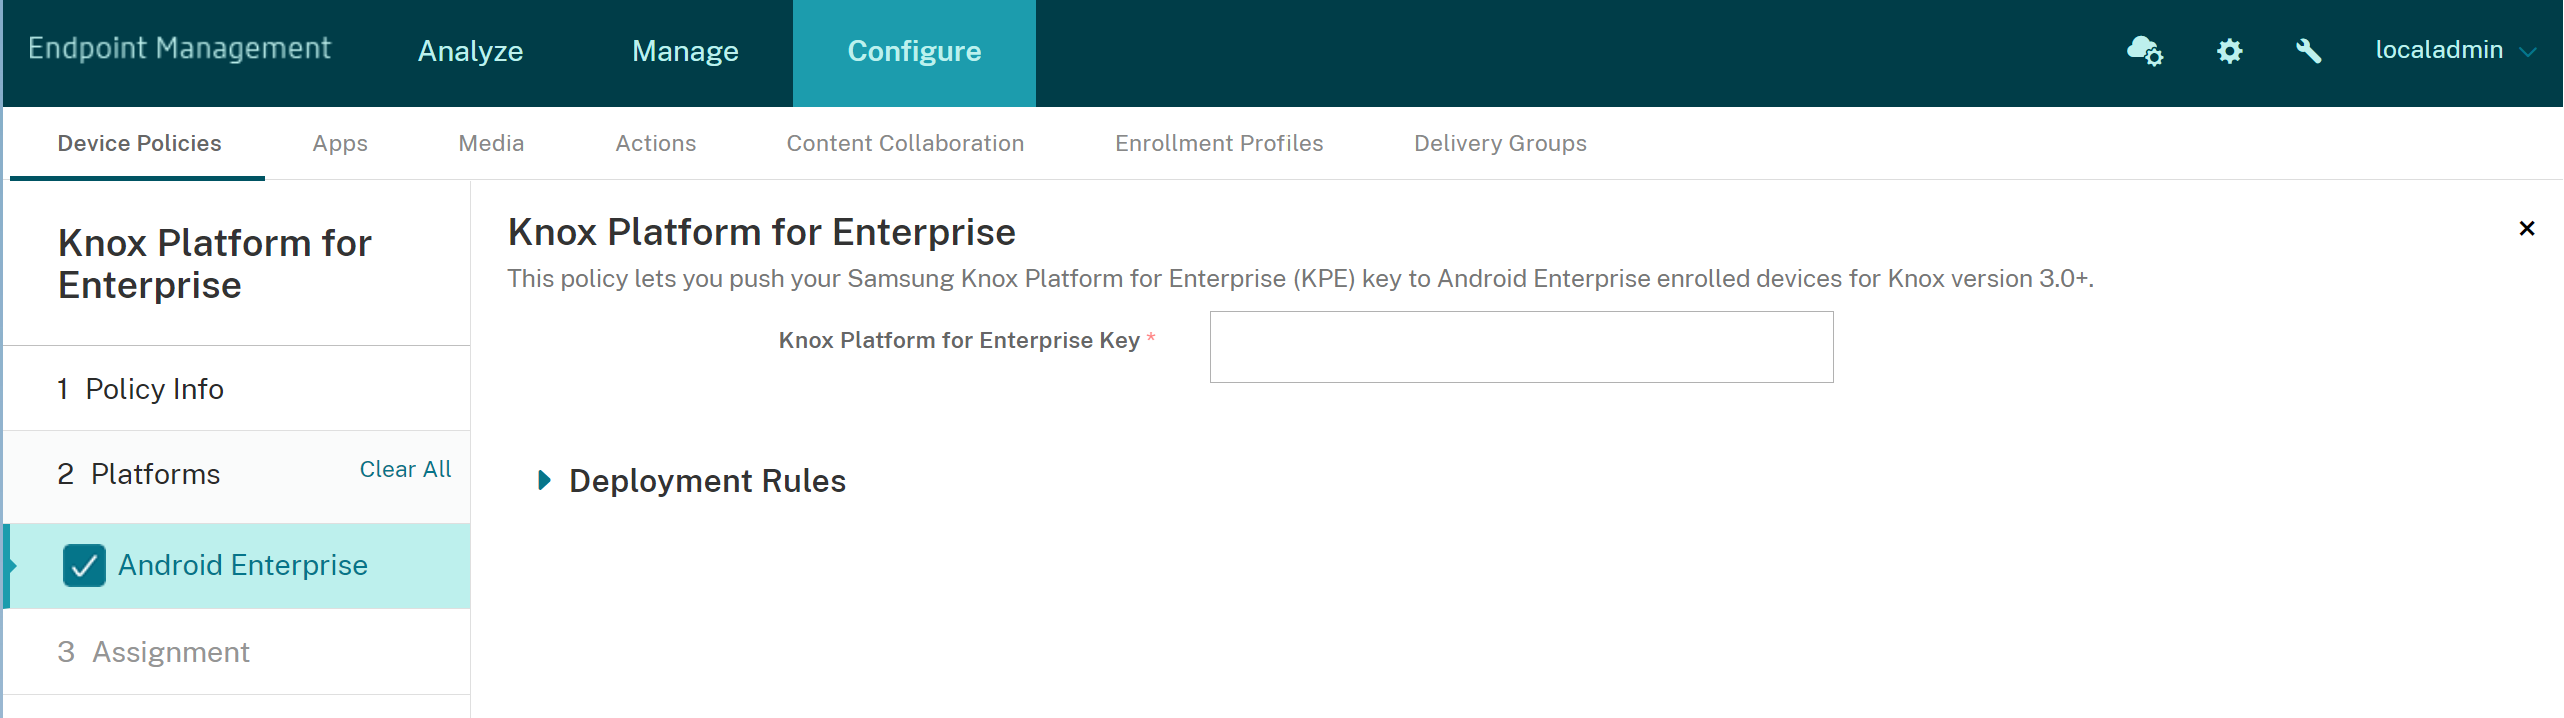 Image de la stratégie Knox Platform for Enterprise pour la plate-forme Android Enterprise